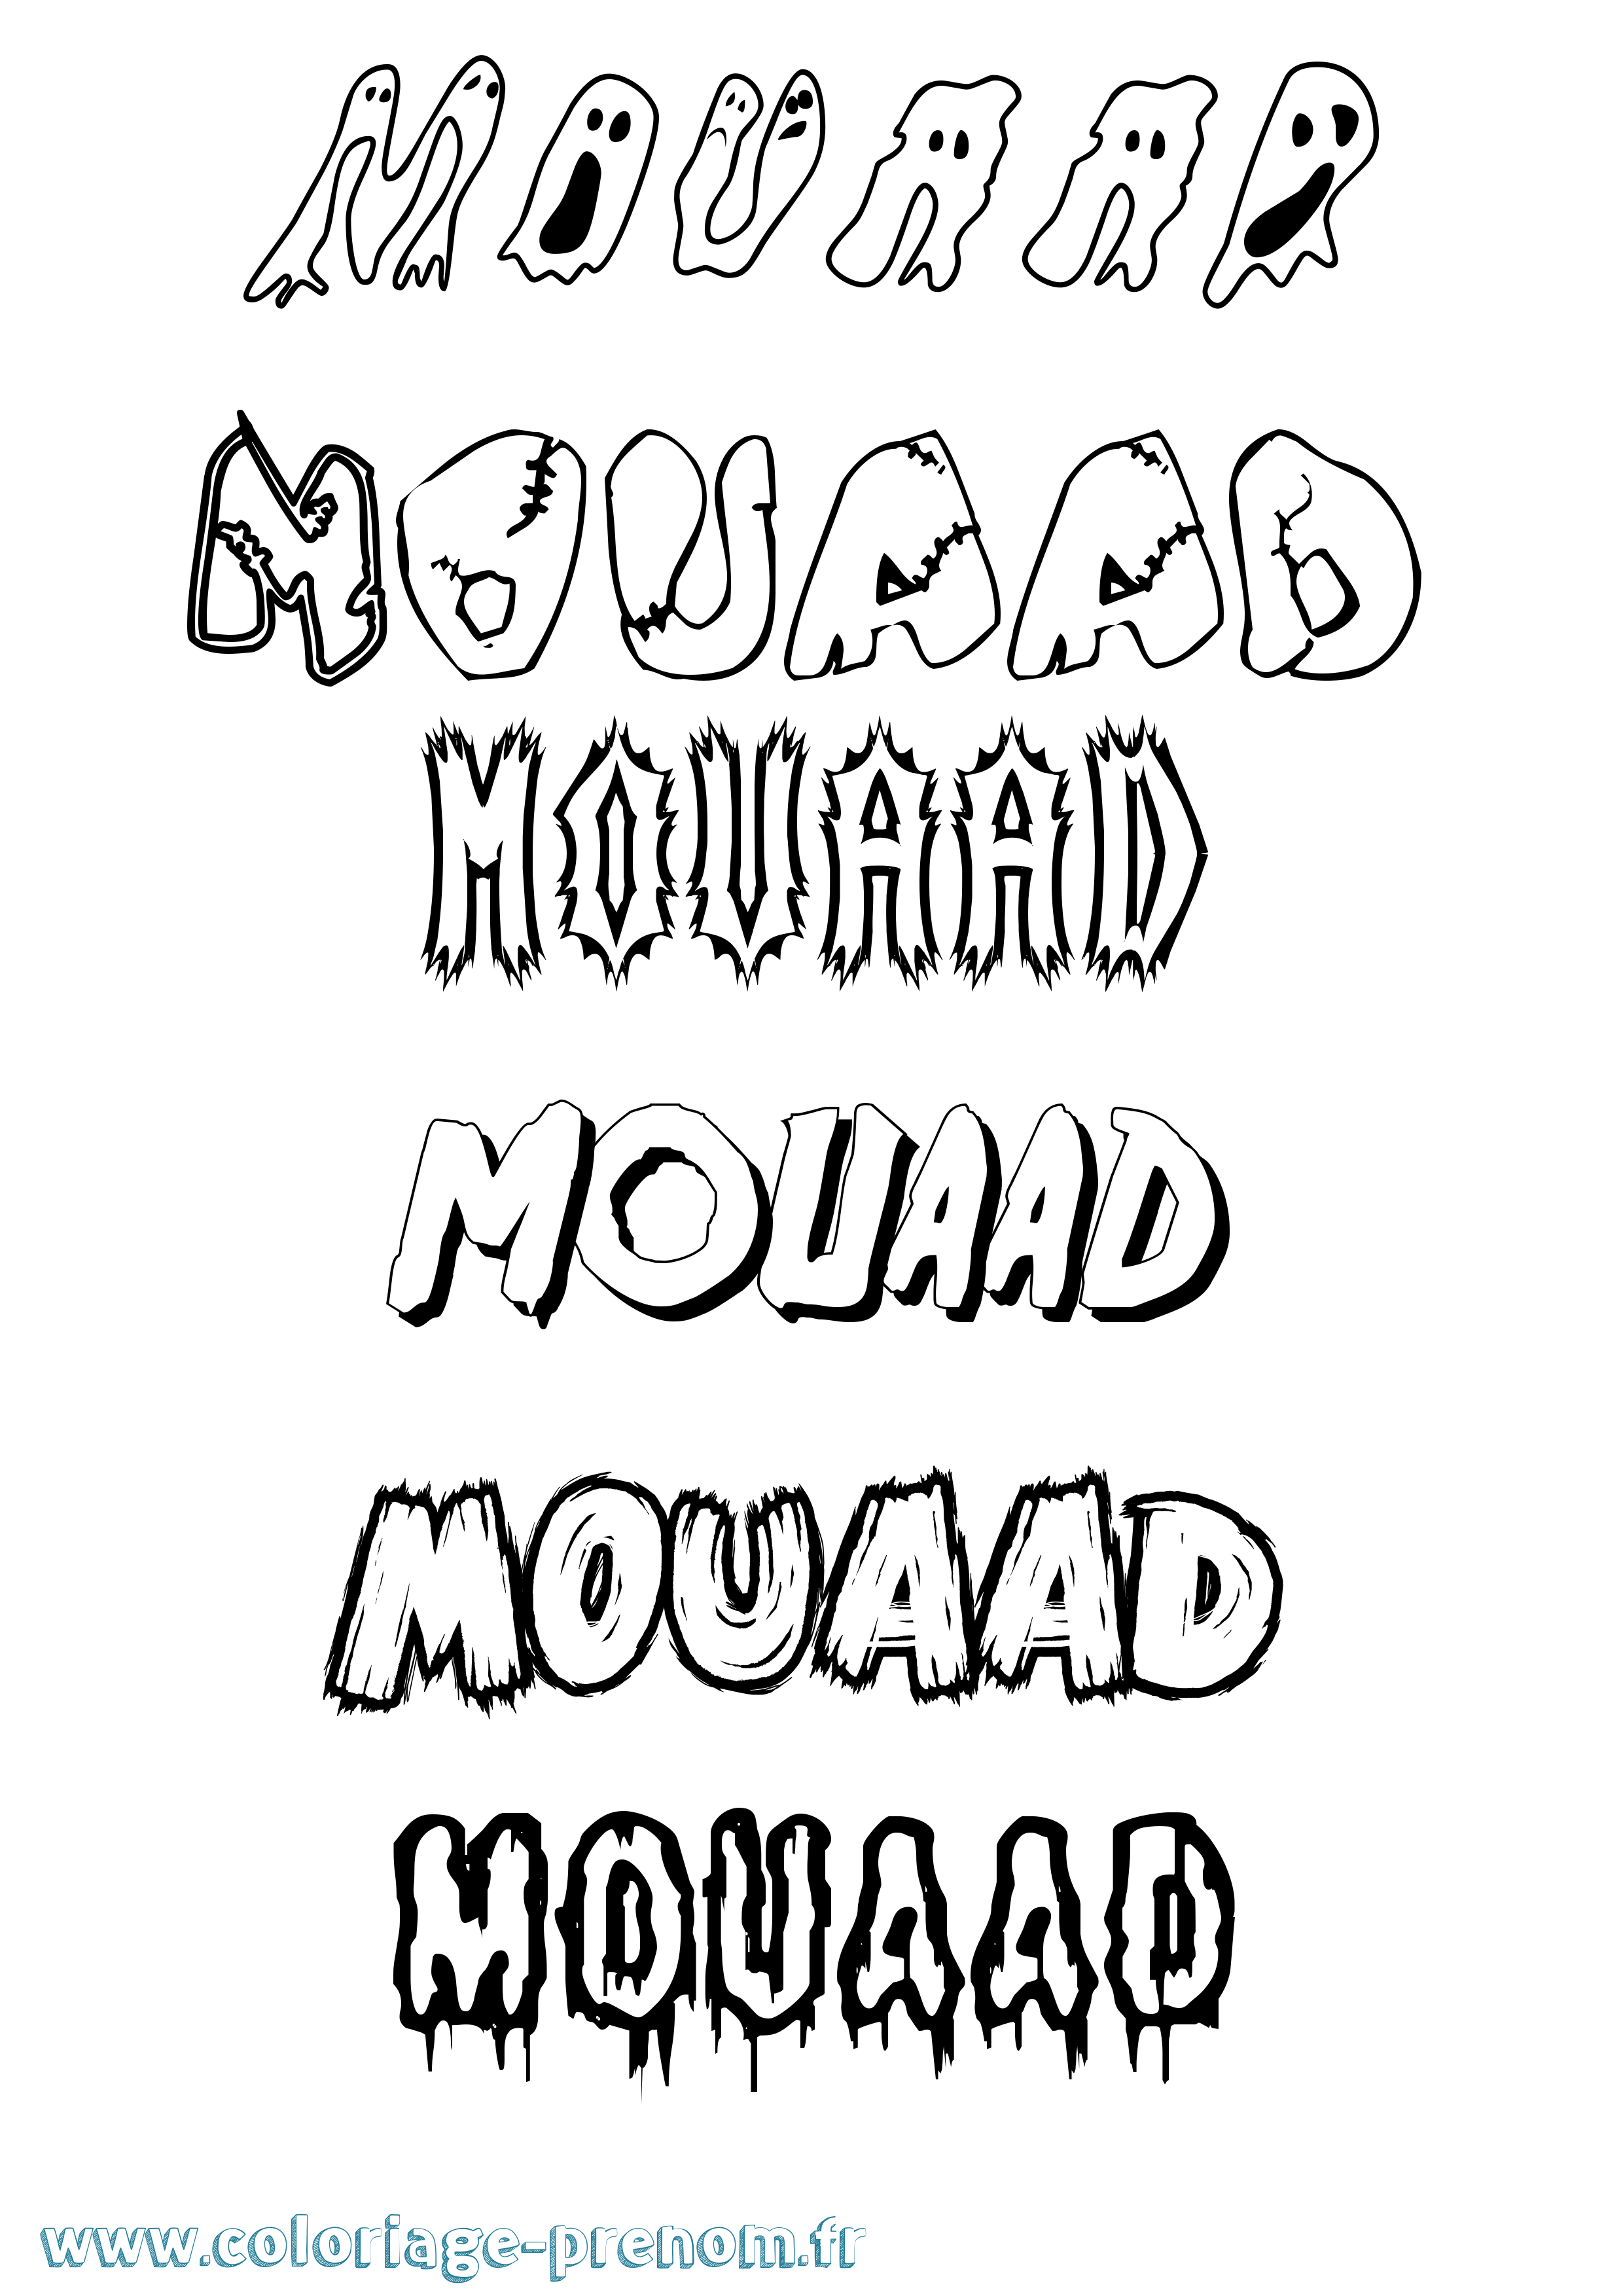 Coloriage prénom Mouaad Frisson